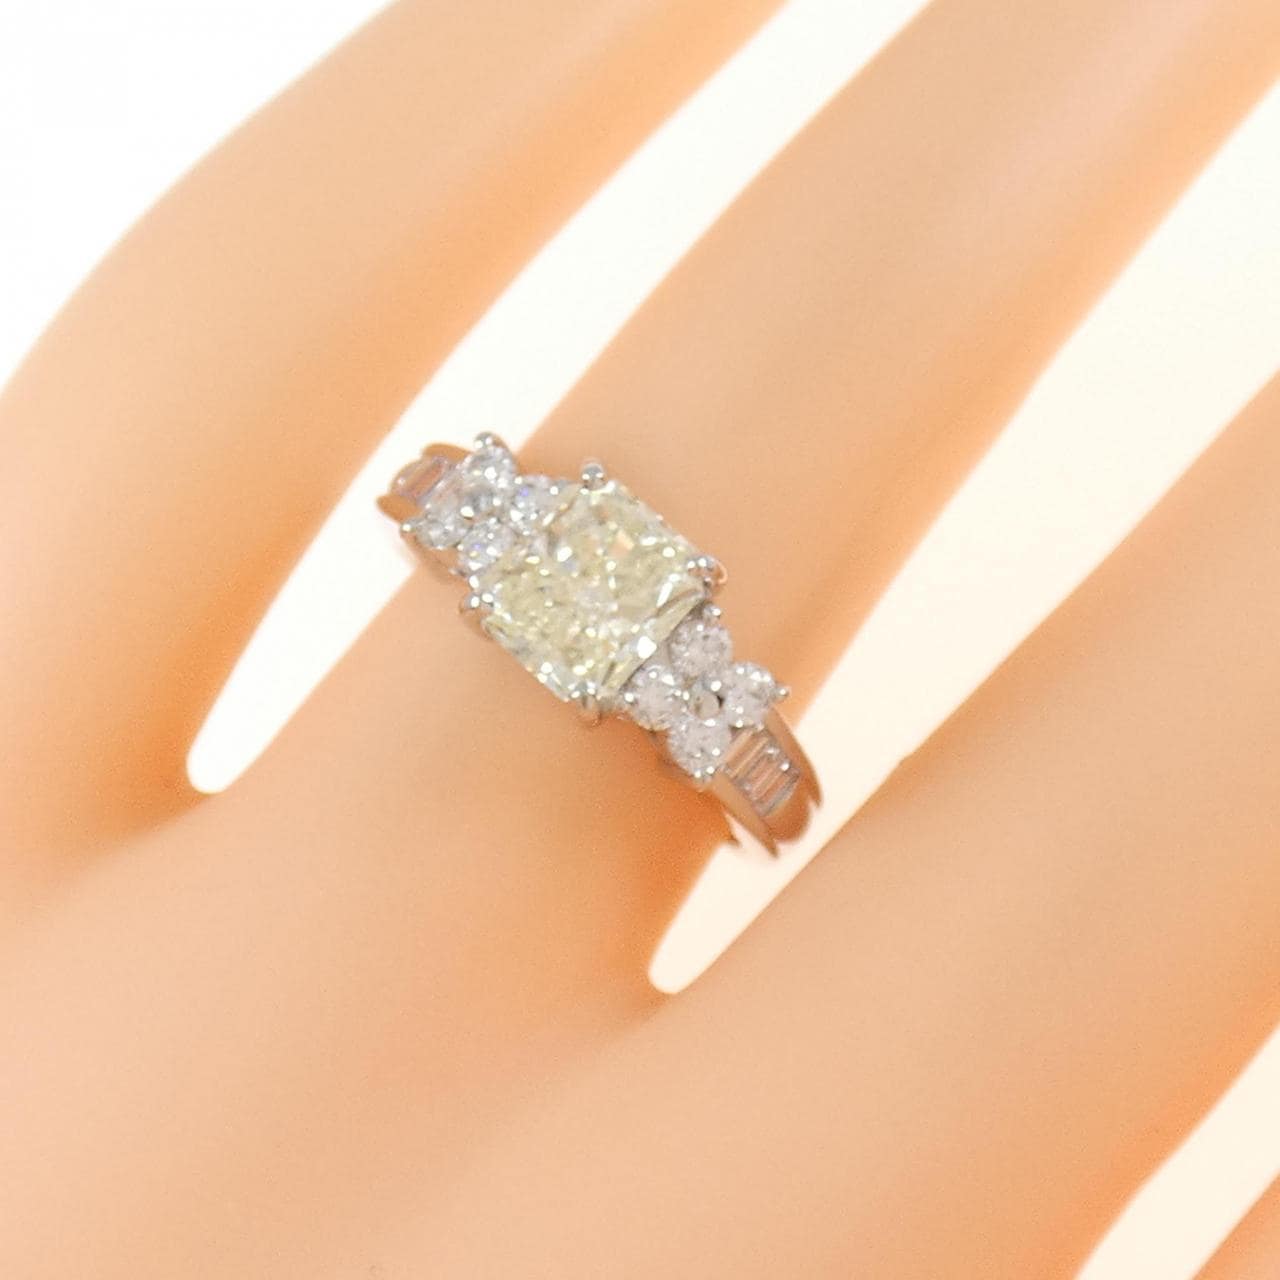 [再加工款] PT鑽石戒指 1.315CT VLY VS1 花式切割